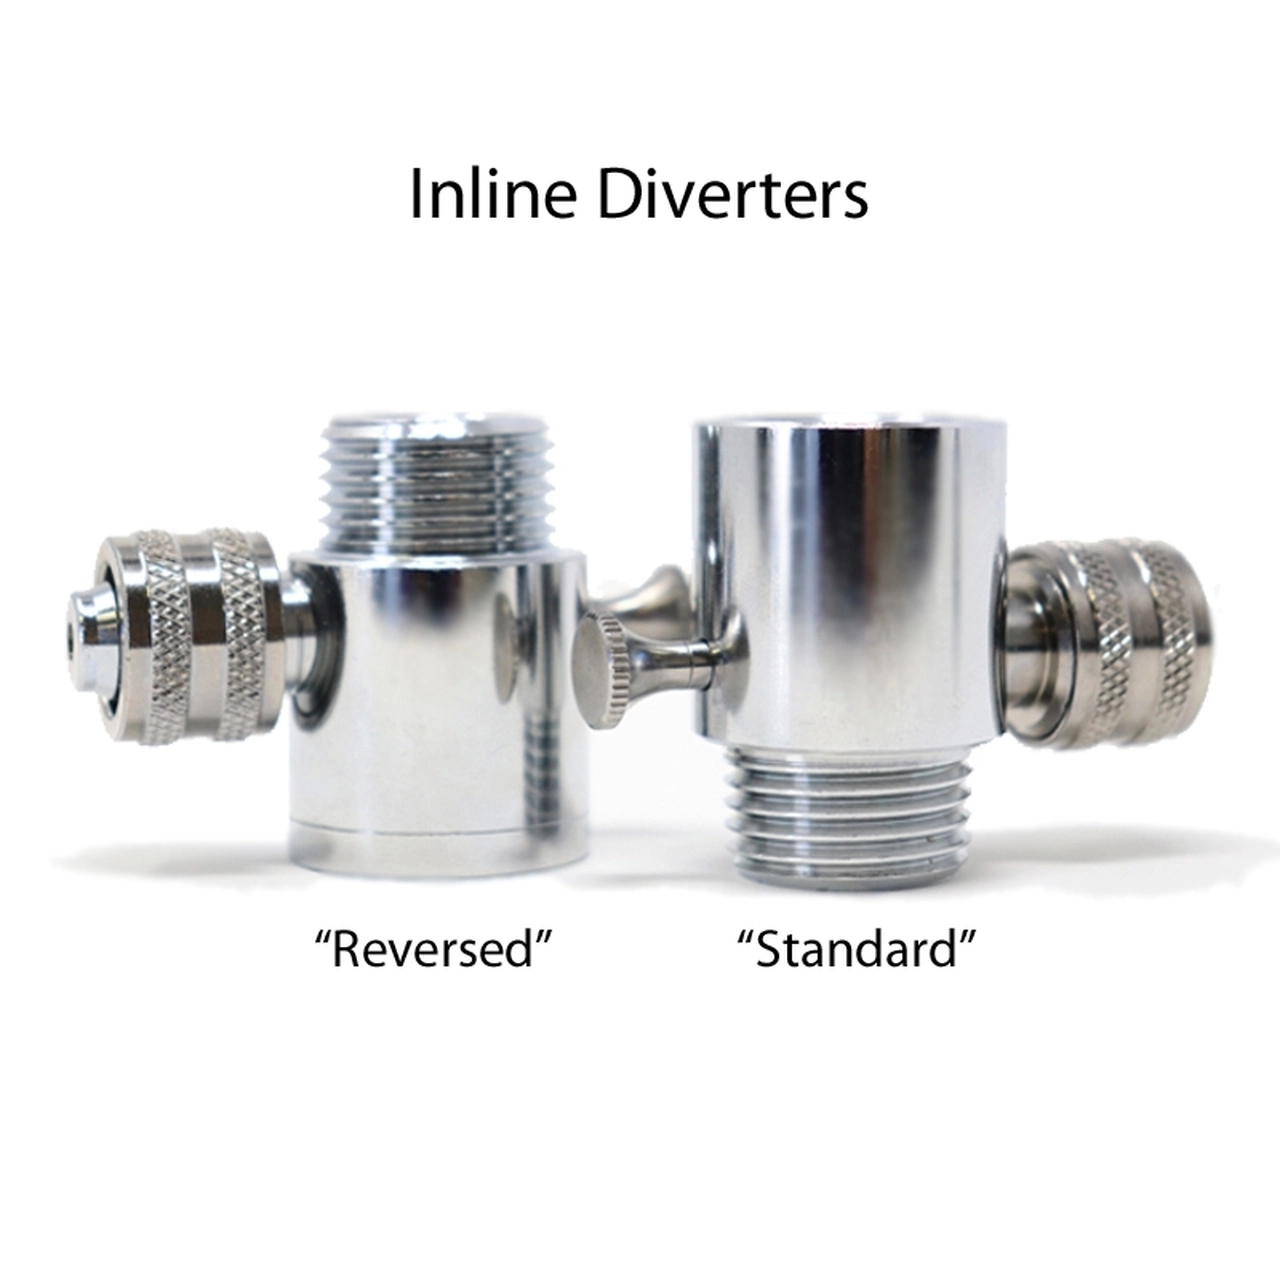 In-line Diverter (Reversed)